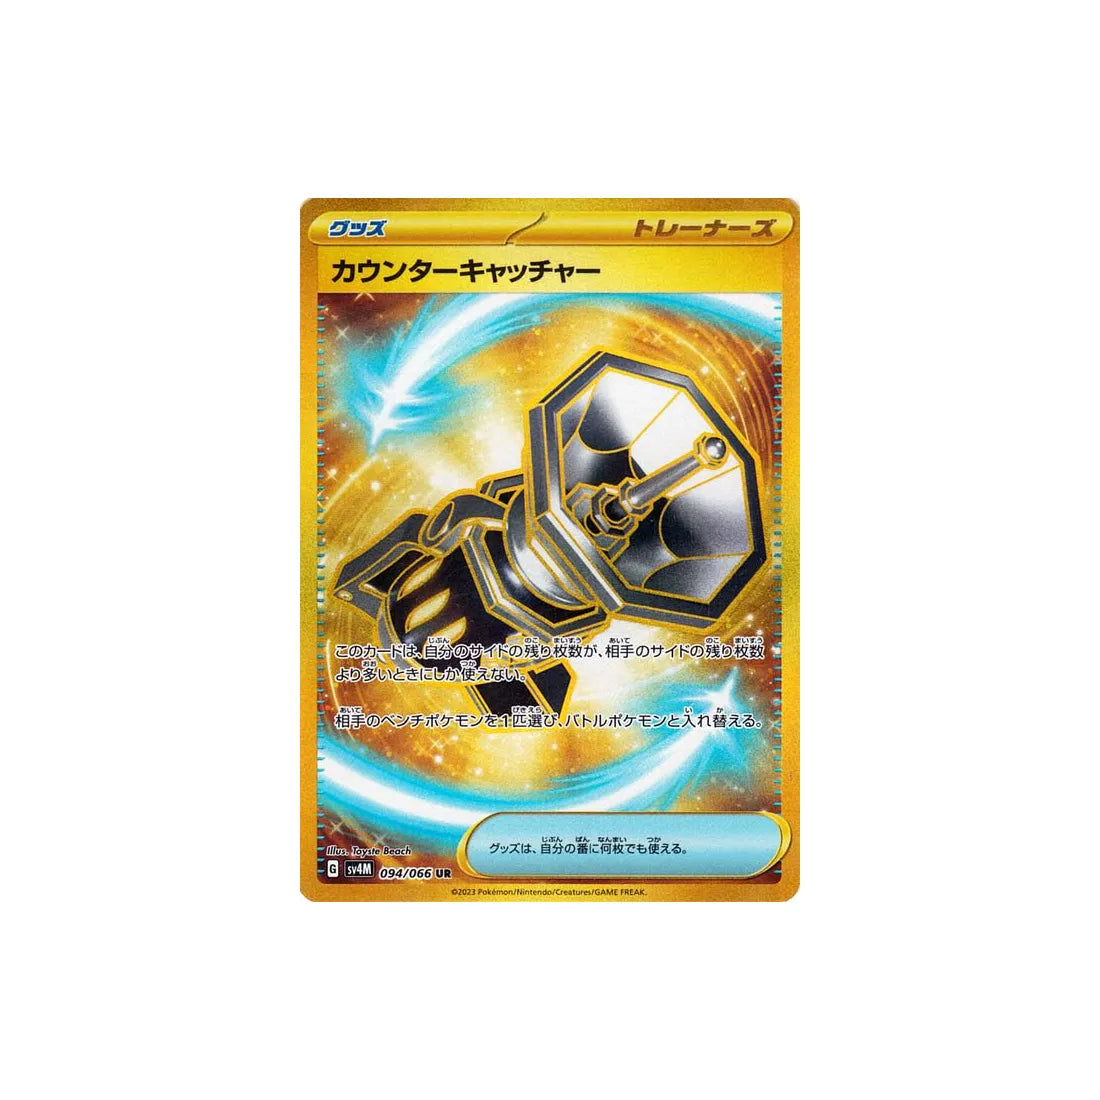 counter-catcher-carte-pokemon-future-flash-sv4m-094